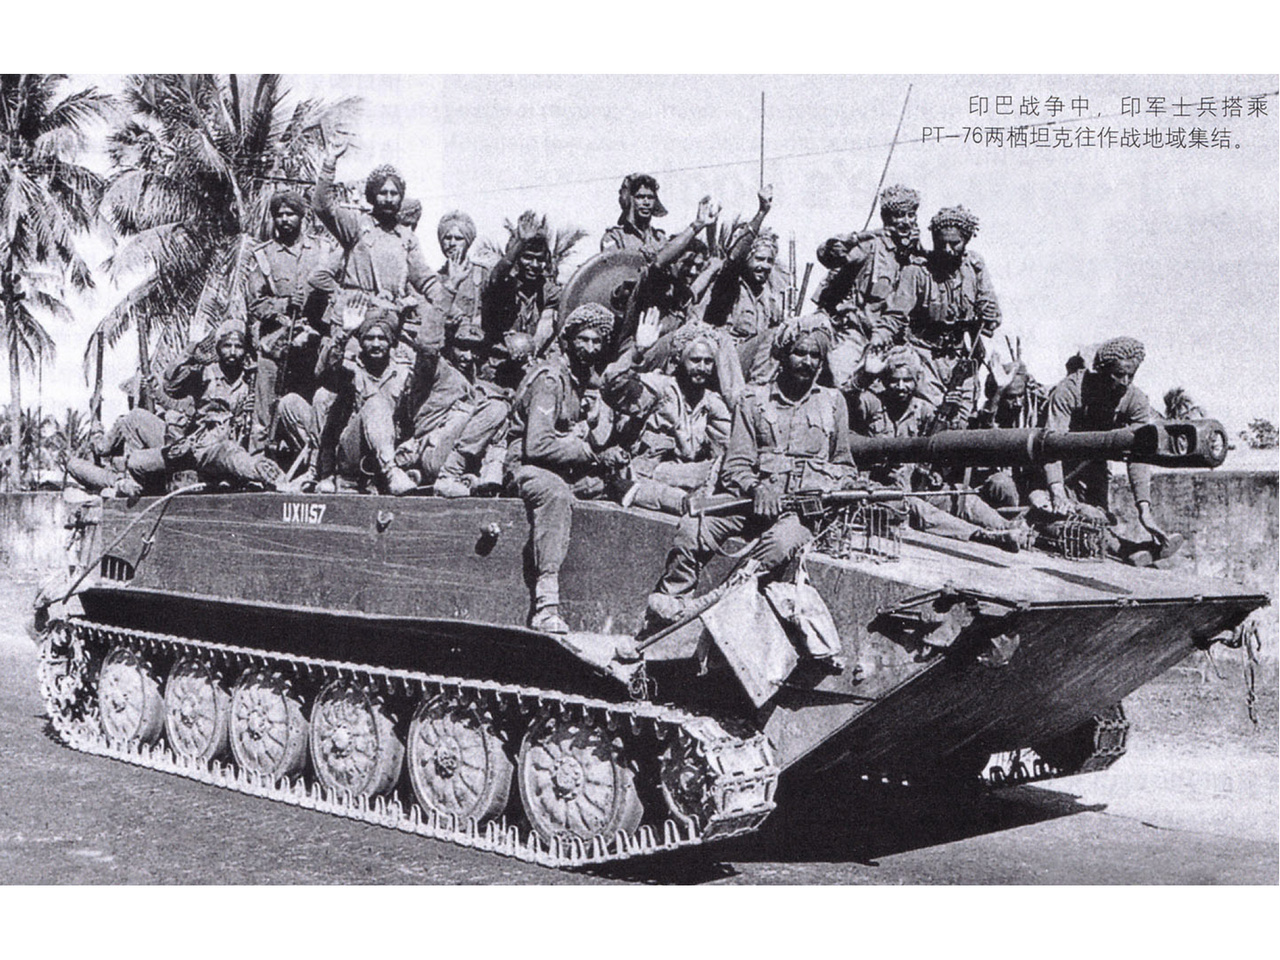 印度士兵搭乘PT-76水陸坦克